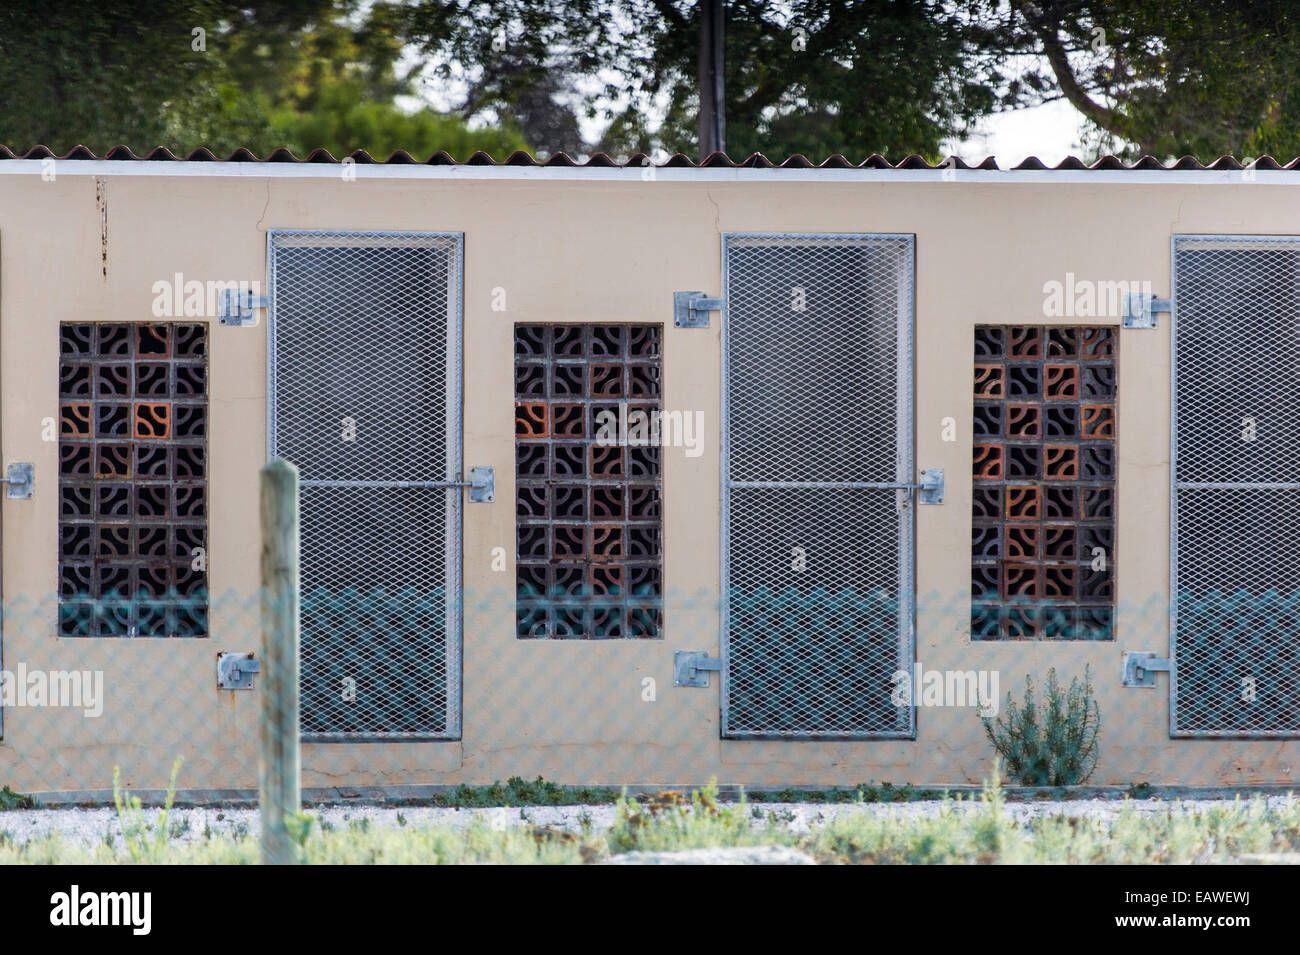 Prisonnier politique détenu abandonnés sur les cellules de la prison de Robben Island. Banque D'Images